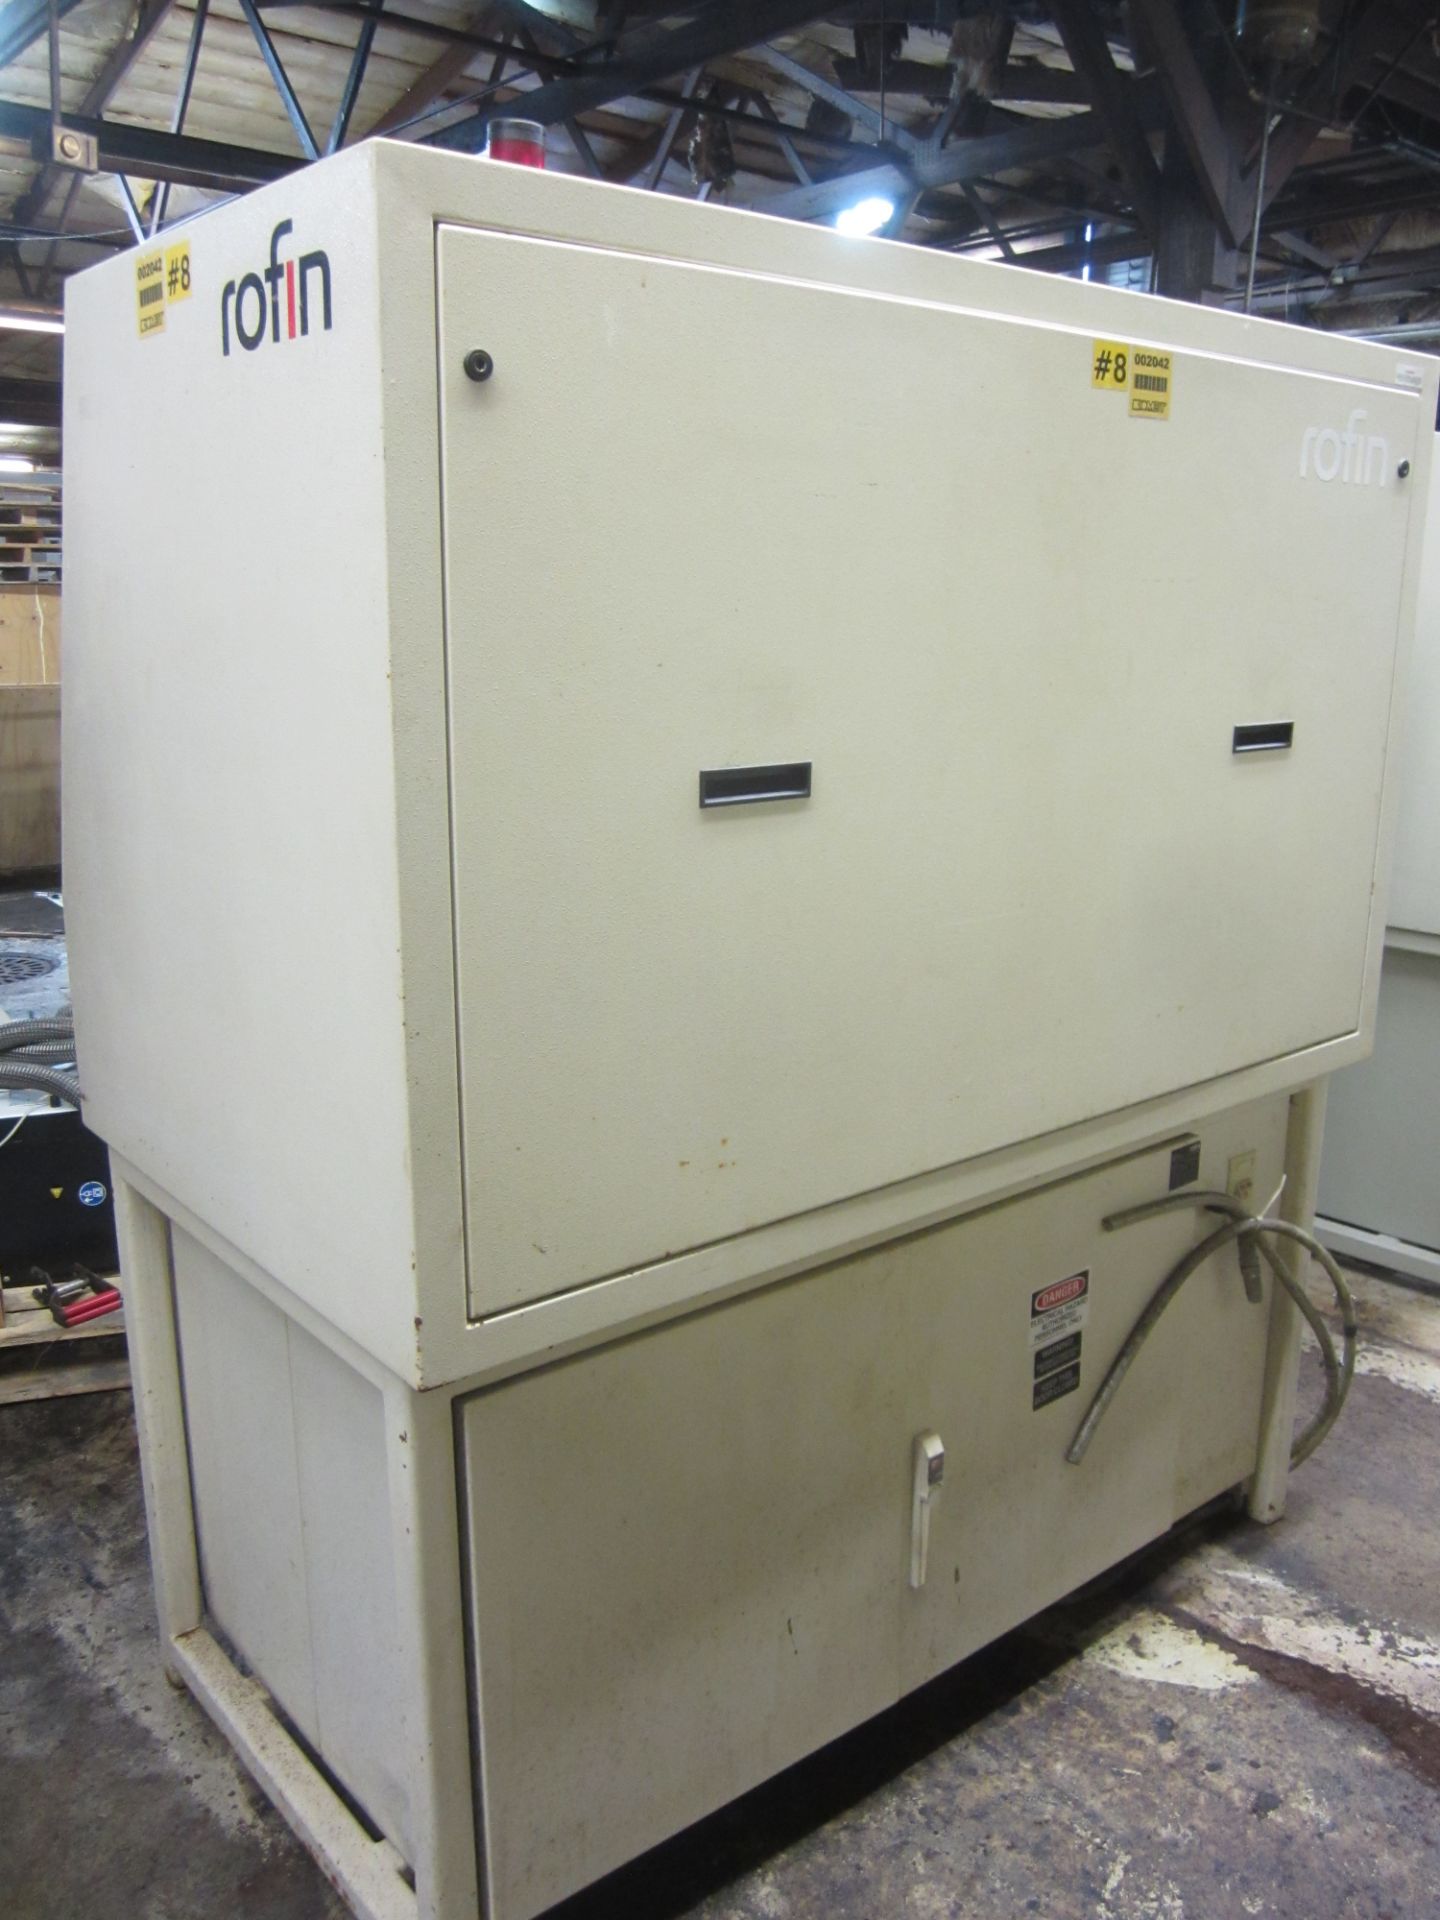 Rofin Model LME-1 Laser Parts Marker, 100 Watt, s/n SMD-060-110922-22009, New 2003 - Image 7 of 9